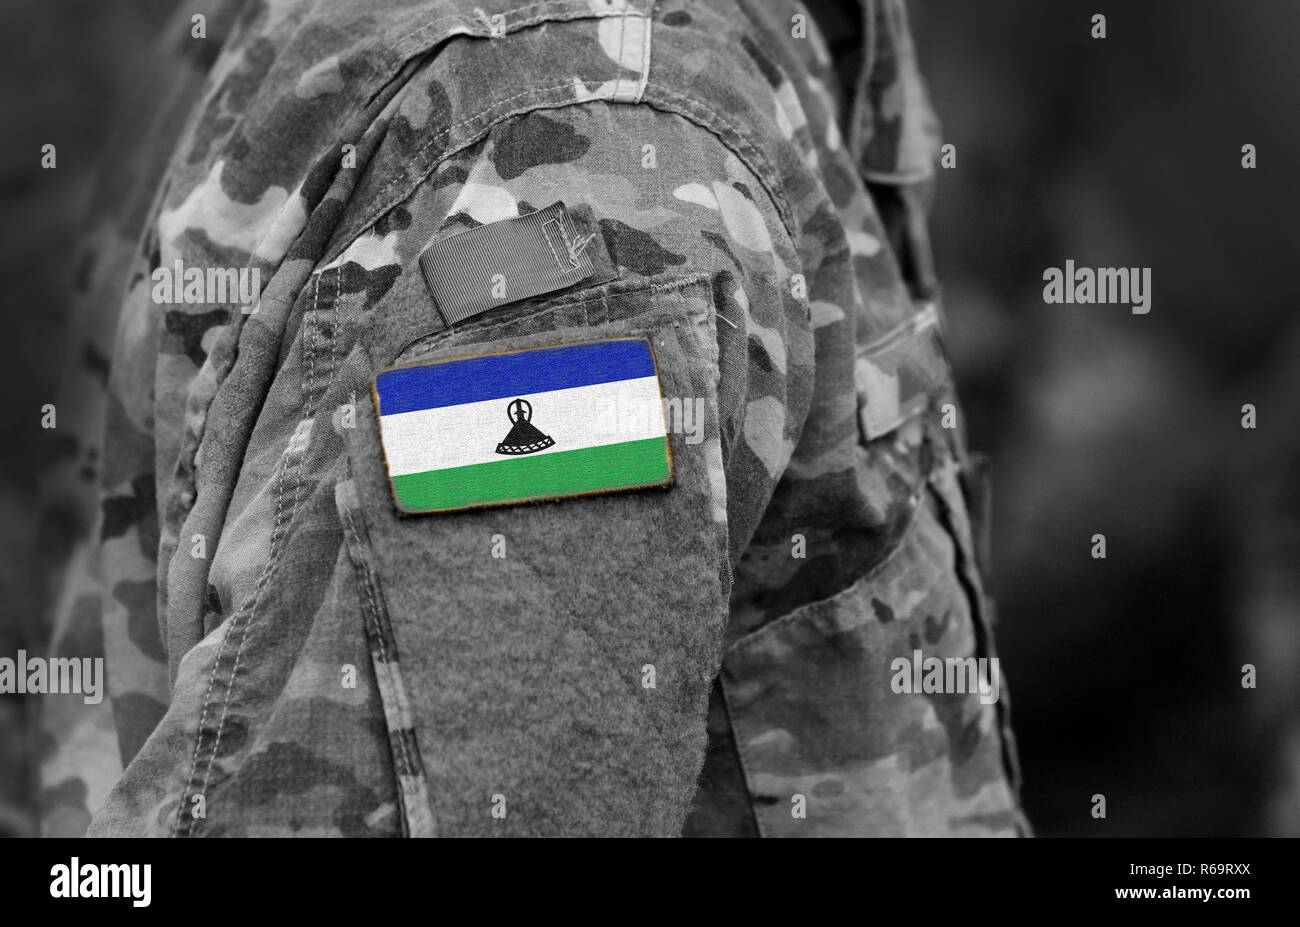 Bandera de Lesotho por soldados del brazo. Lesotho bandera en uniforme militar. Ejército, tropas, militares, África (collage). Foto de stock